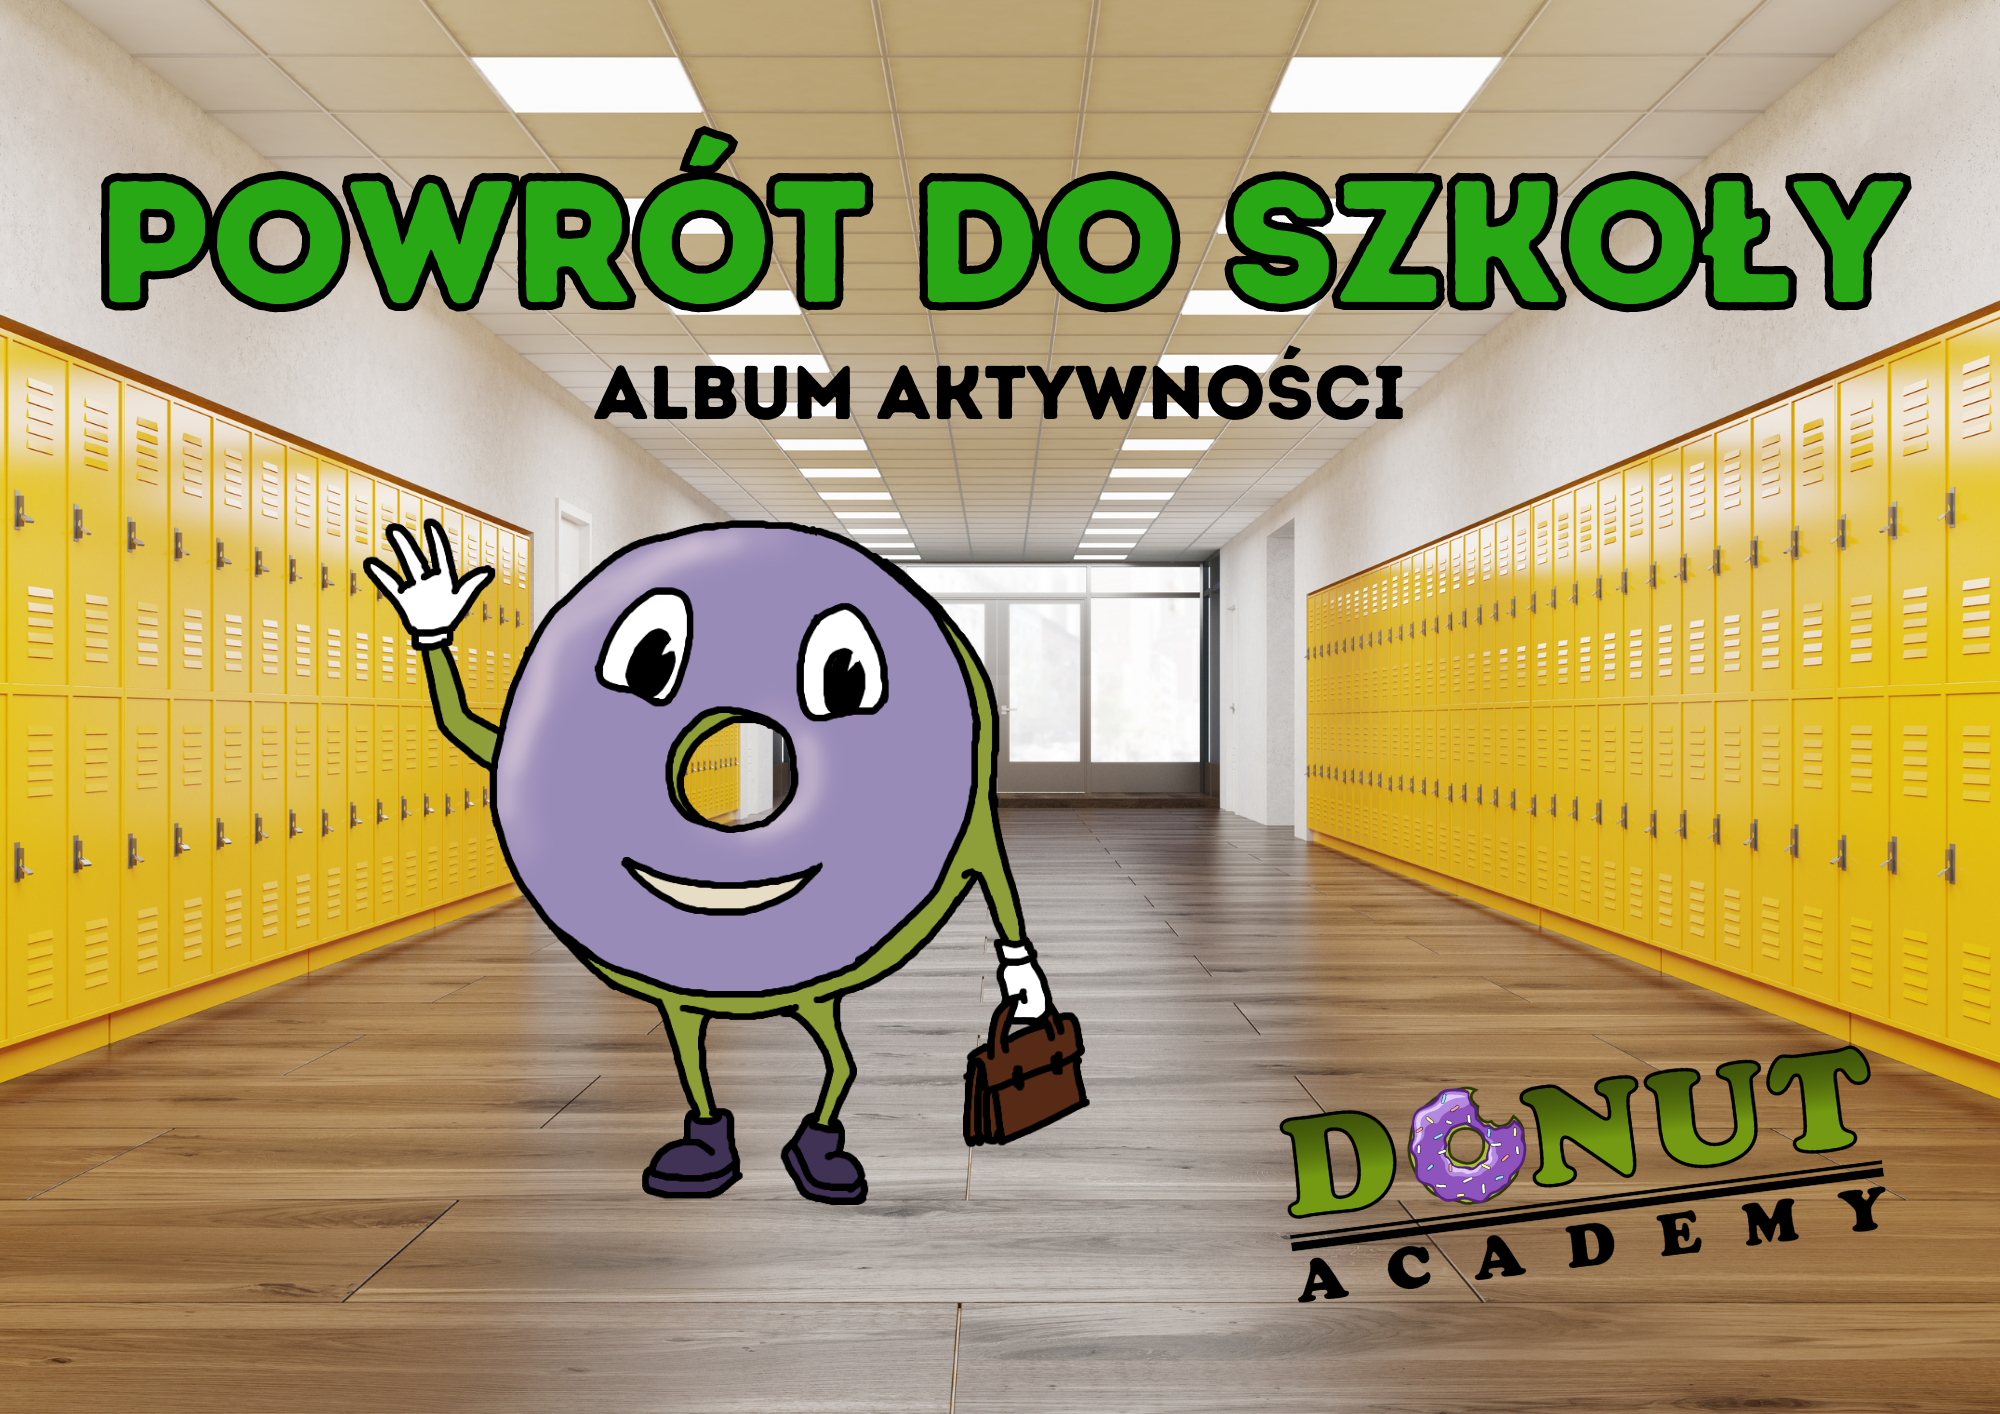 Powrót do szkoły z Donut Academy (album aktywności)